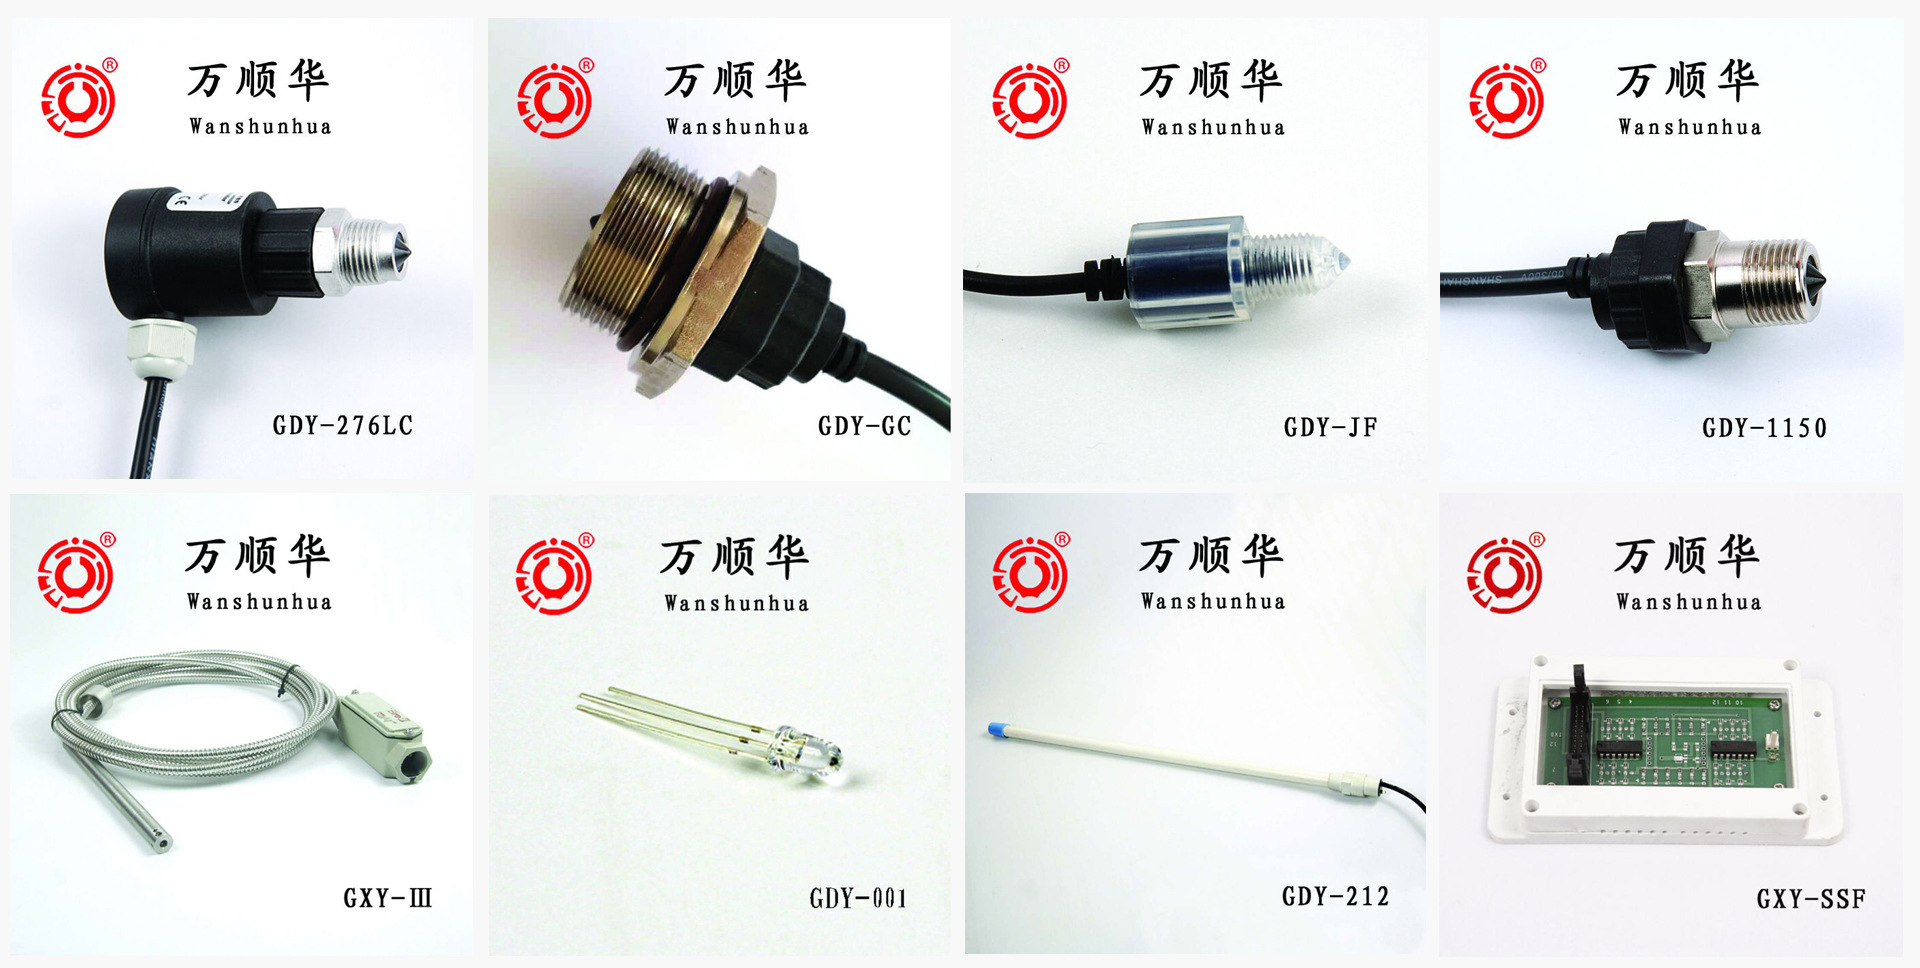 【光电液位开关】 GDY-950JF 光电液位开关厂家 光电液位开关价格示例图10